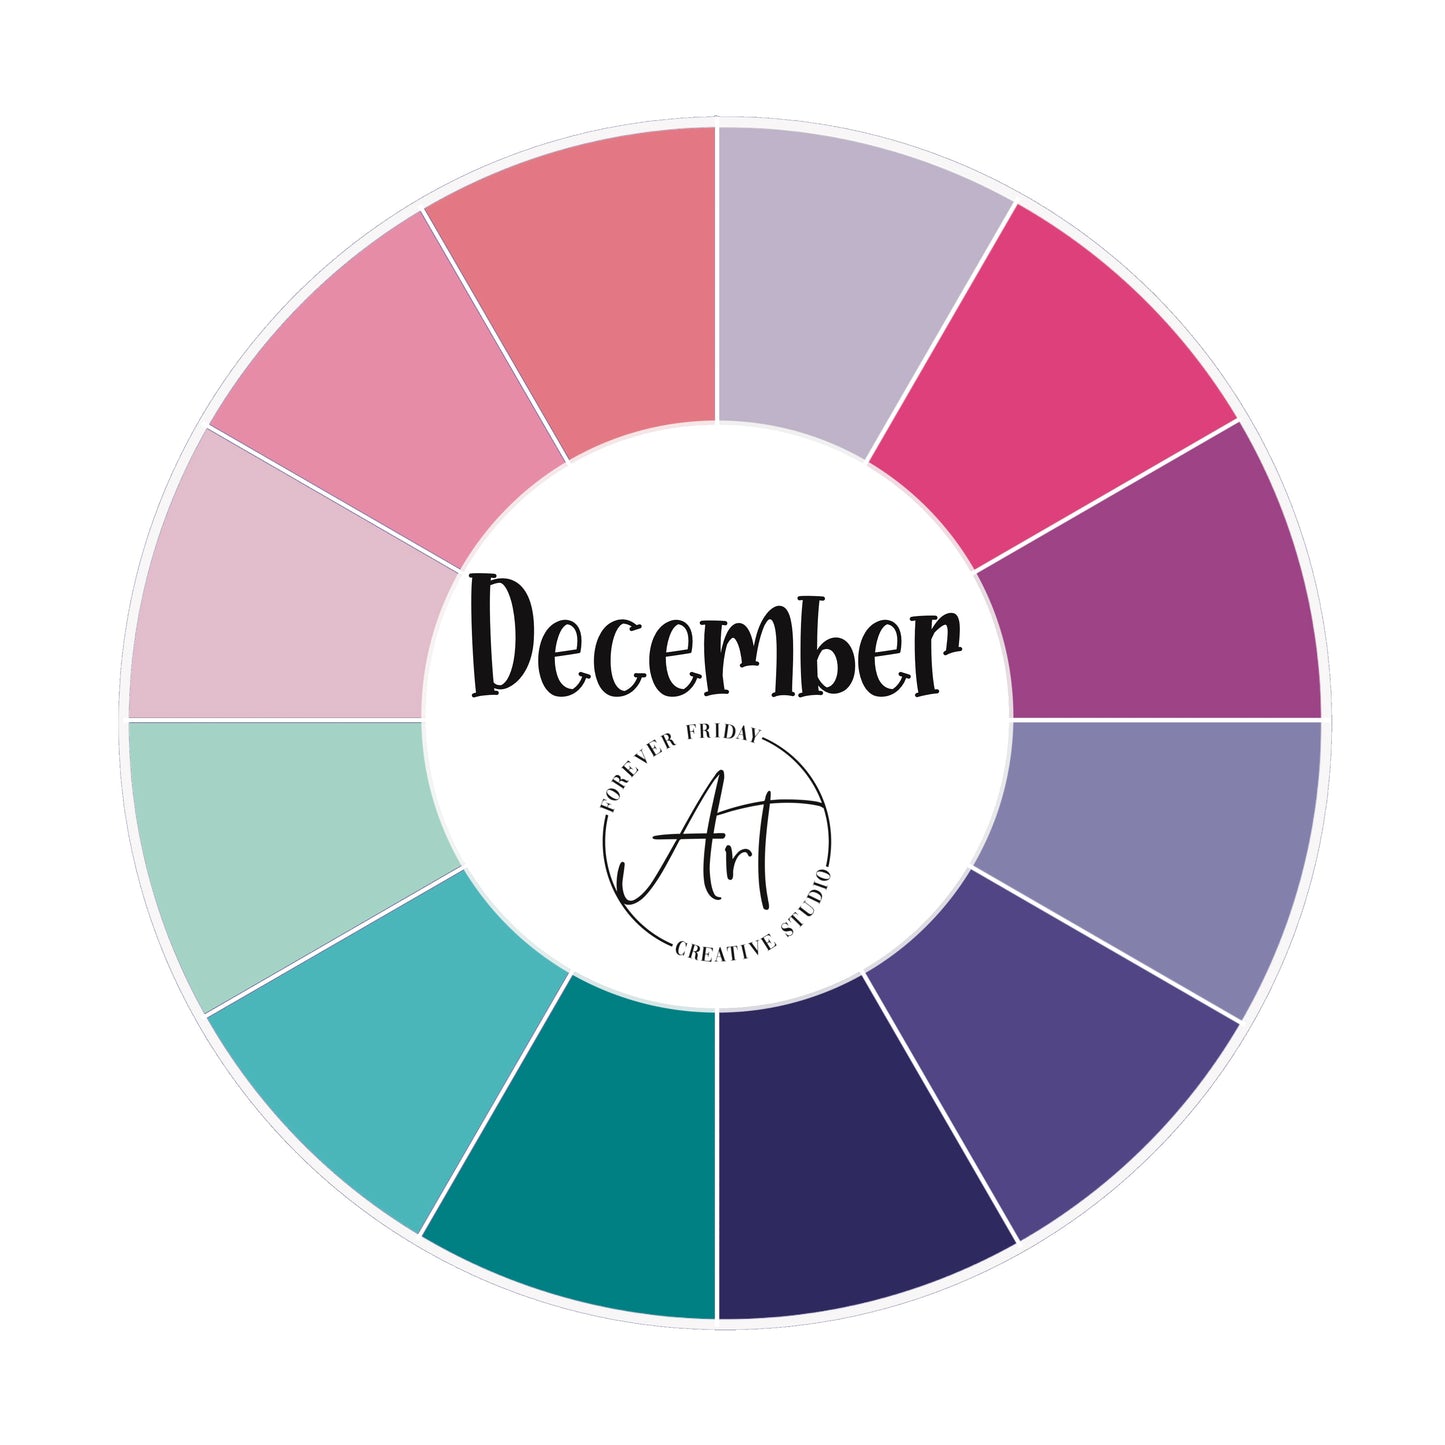 December - Sticker Club